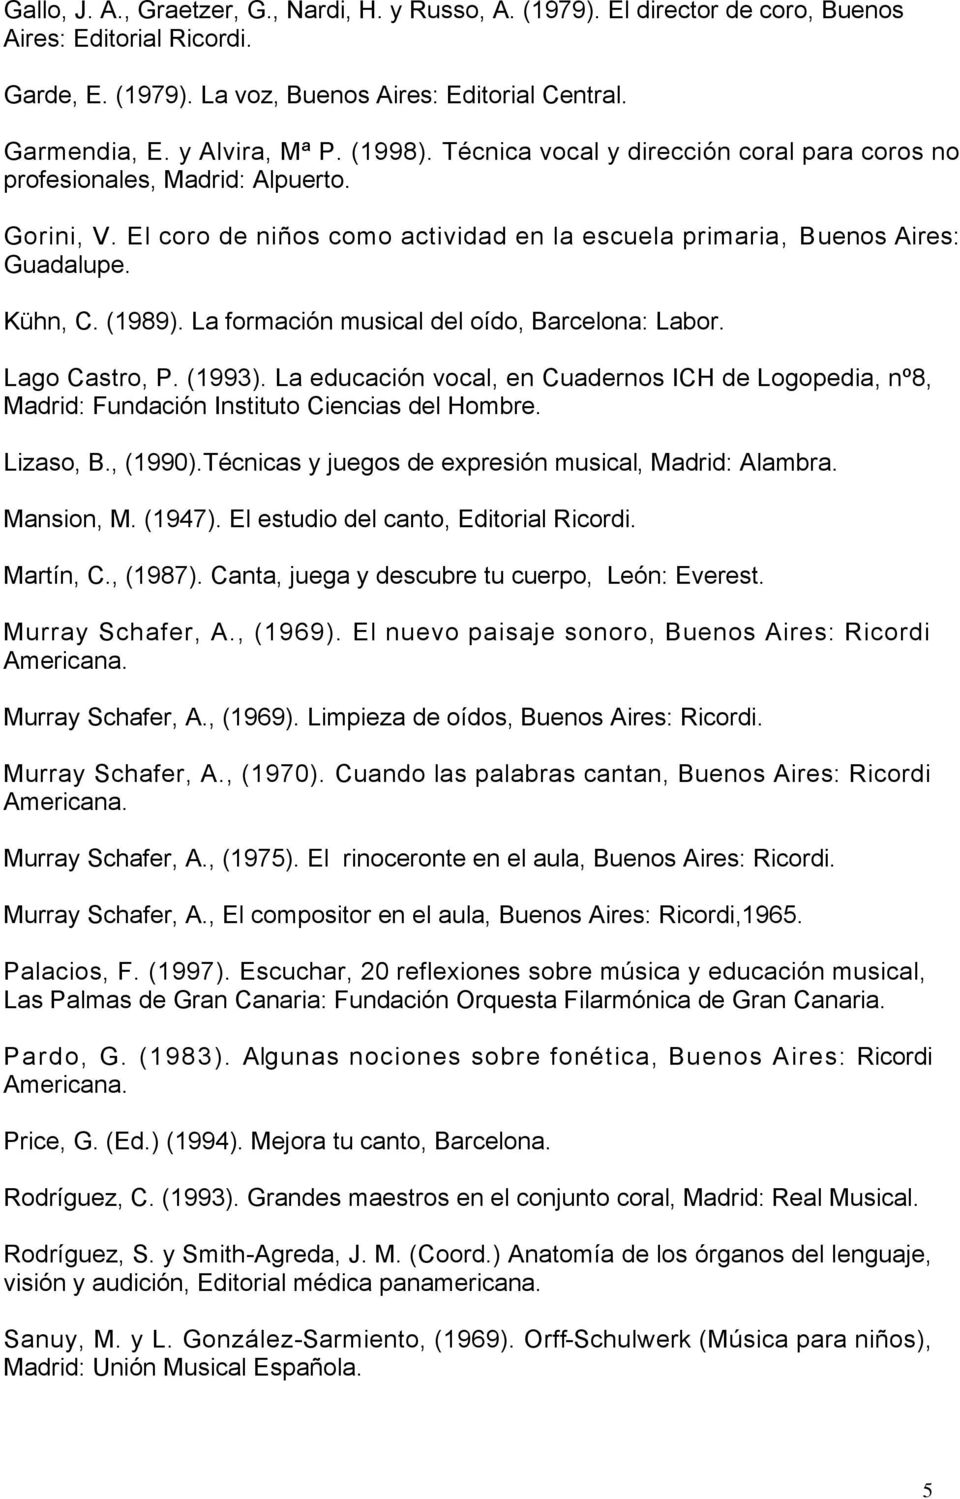 La formación musical del oído, Barcelona: Labor. Lago Castro, P. (1993). La educación vocal, en Cuadernos ICH de Logopedia, nº8, Madrid: Fundación Instituto Ciencias del Hombre. Lizaso, B., (1990).